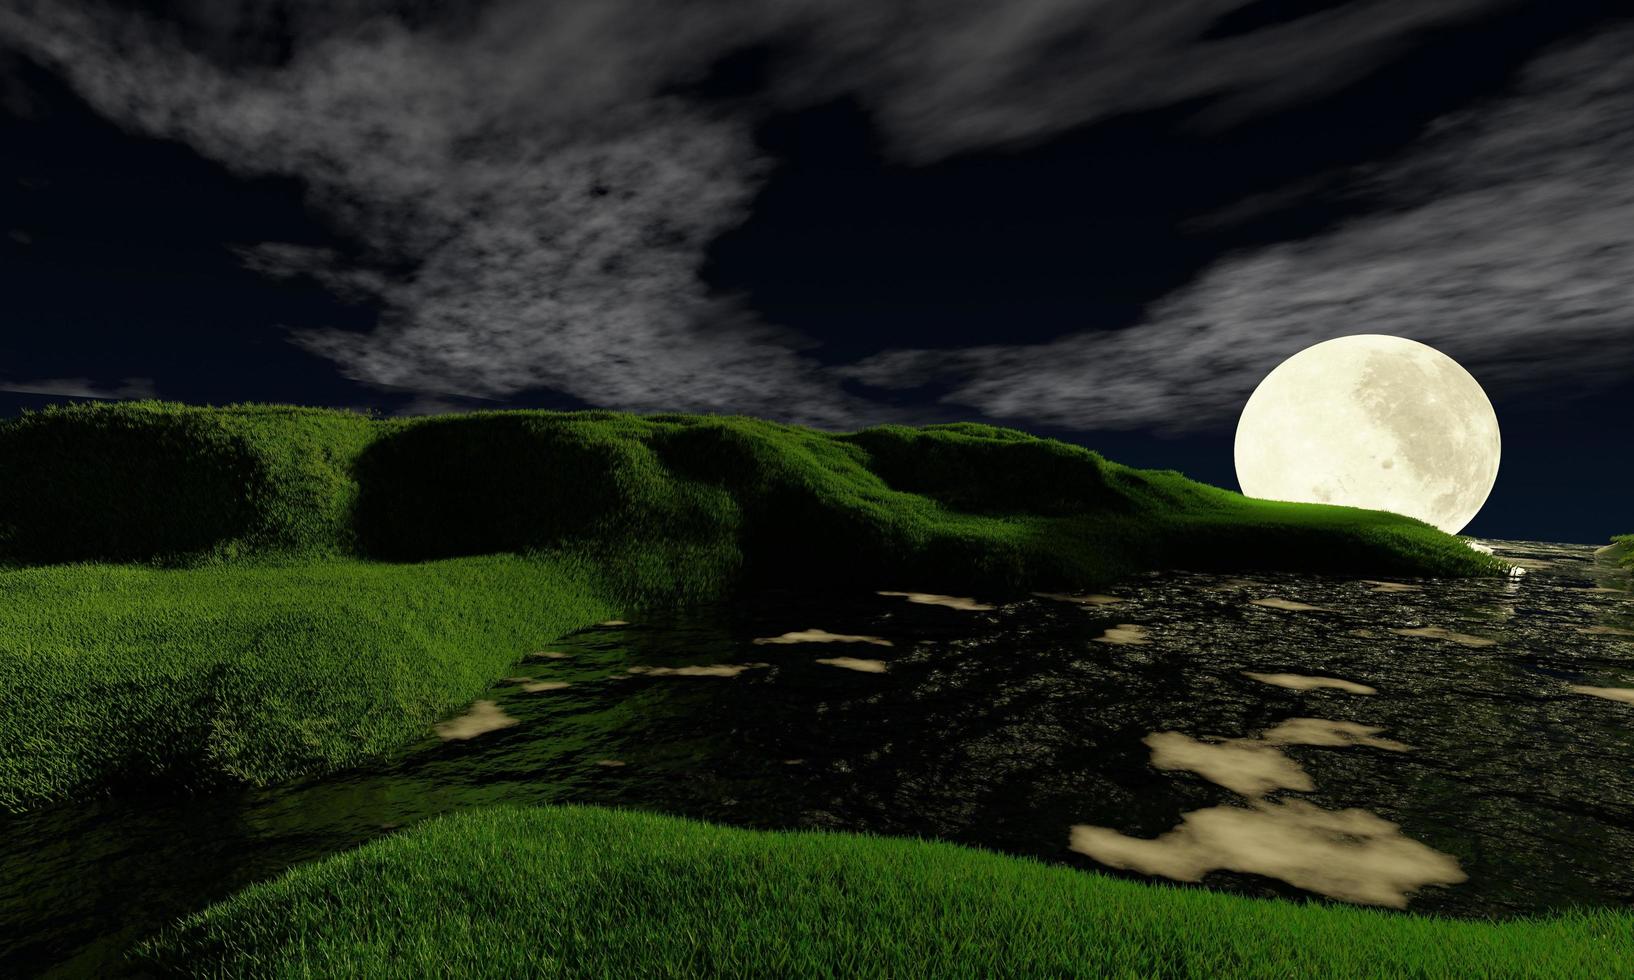 volle maan en witte wolk in donkere hemel. effen landschapsachtergrond voor zomernachtposter. het beste uitzicht voor vakantie. foto van groen grasveld en volle maan met witte wolken. 3D-rendering.